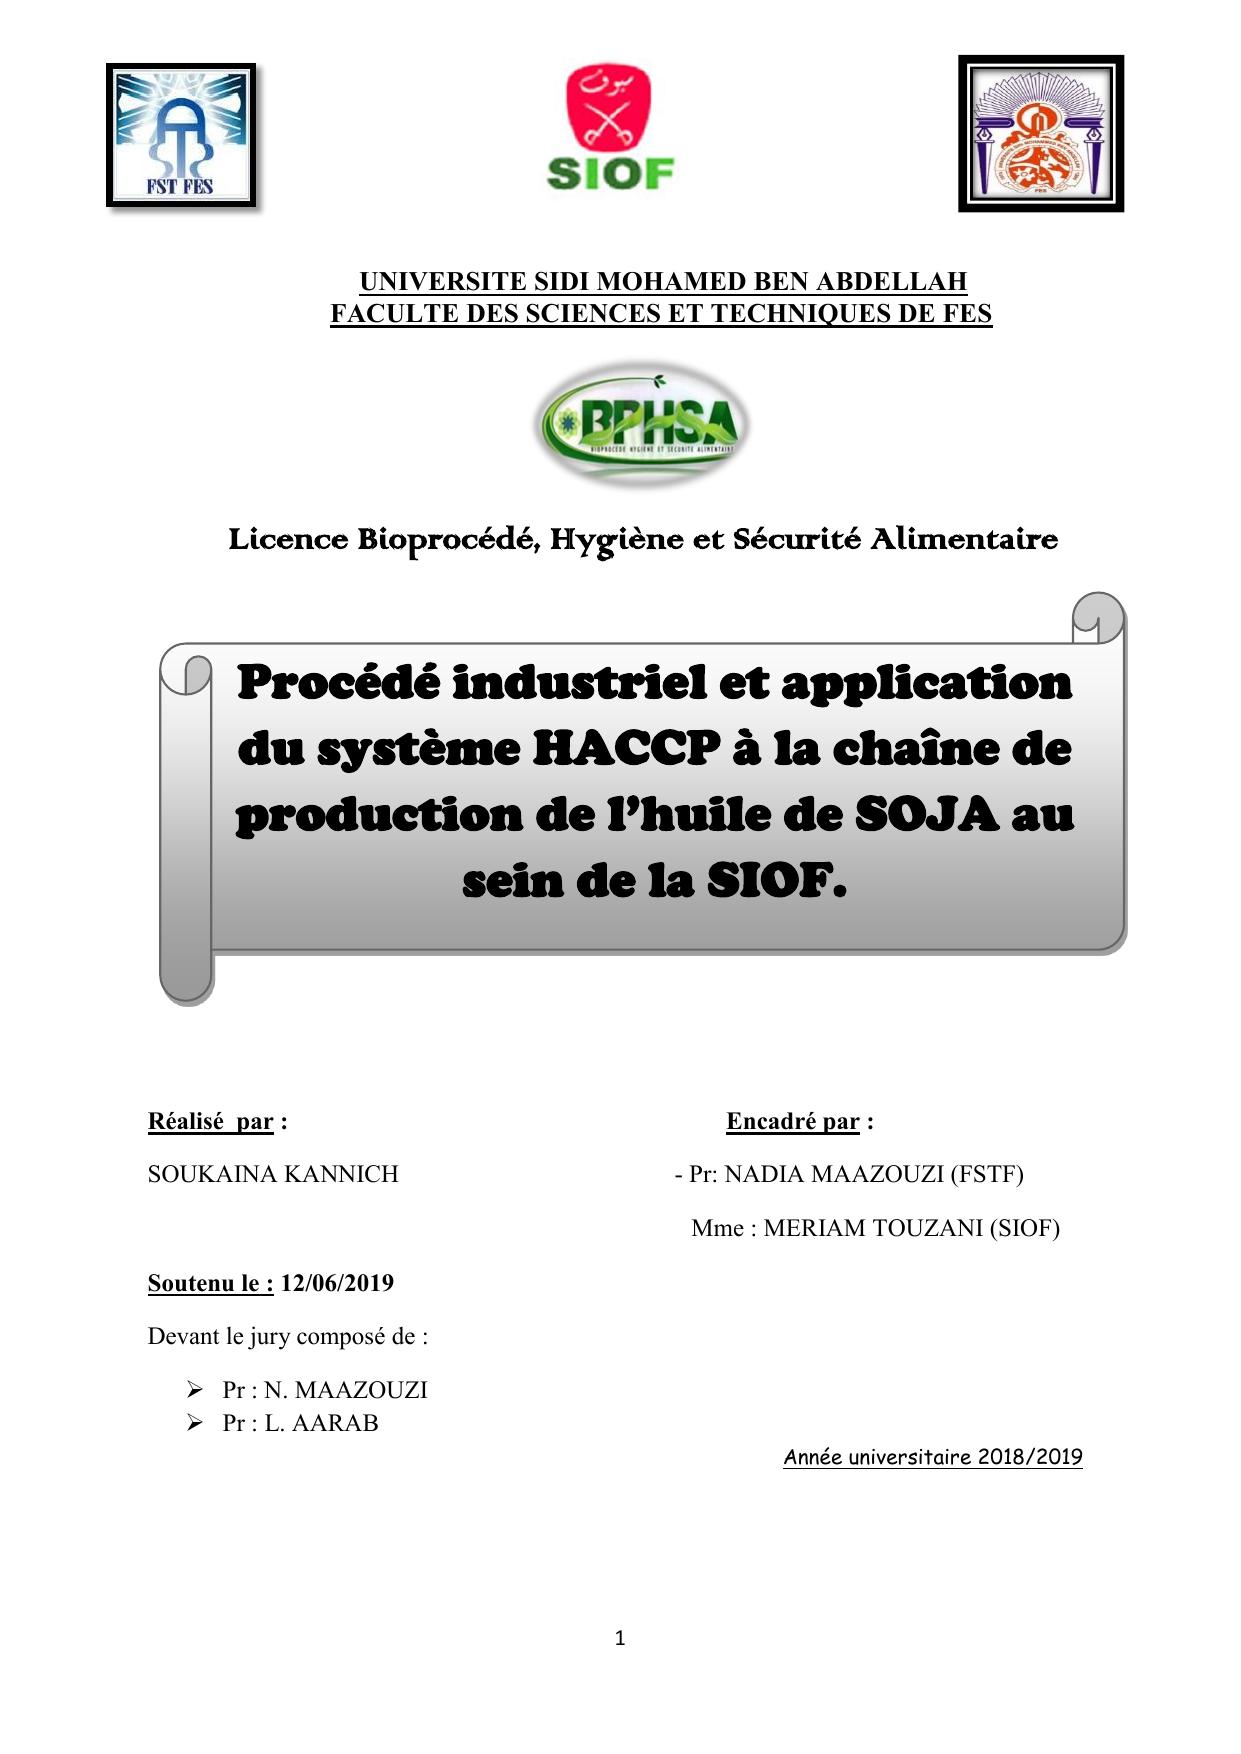 Procédé industriel et application du système HACCP à la chaîne de production de l’huile de SOJA au sein de la SIOF